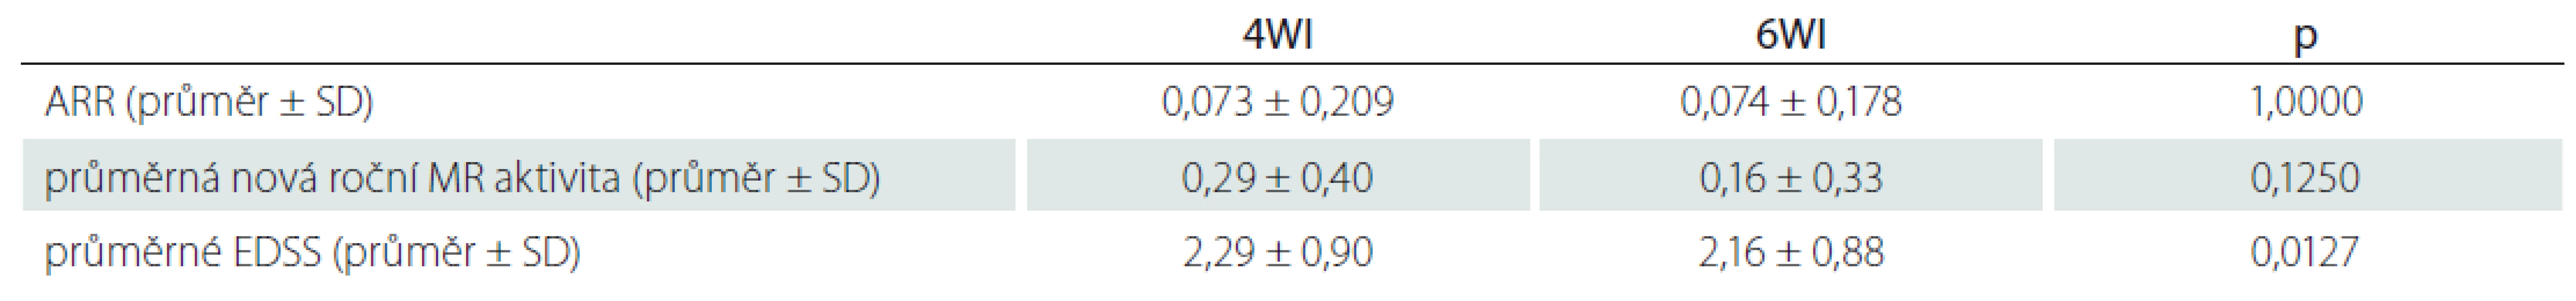 Výsledky srovnání dávkovacích intervalů 4WI a 6WI.